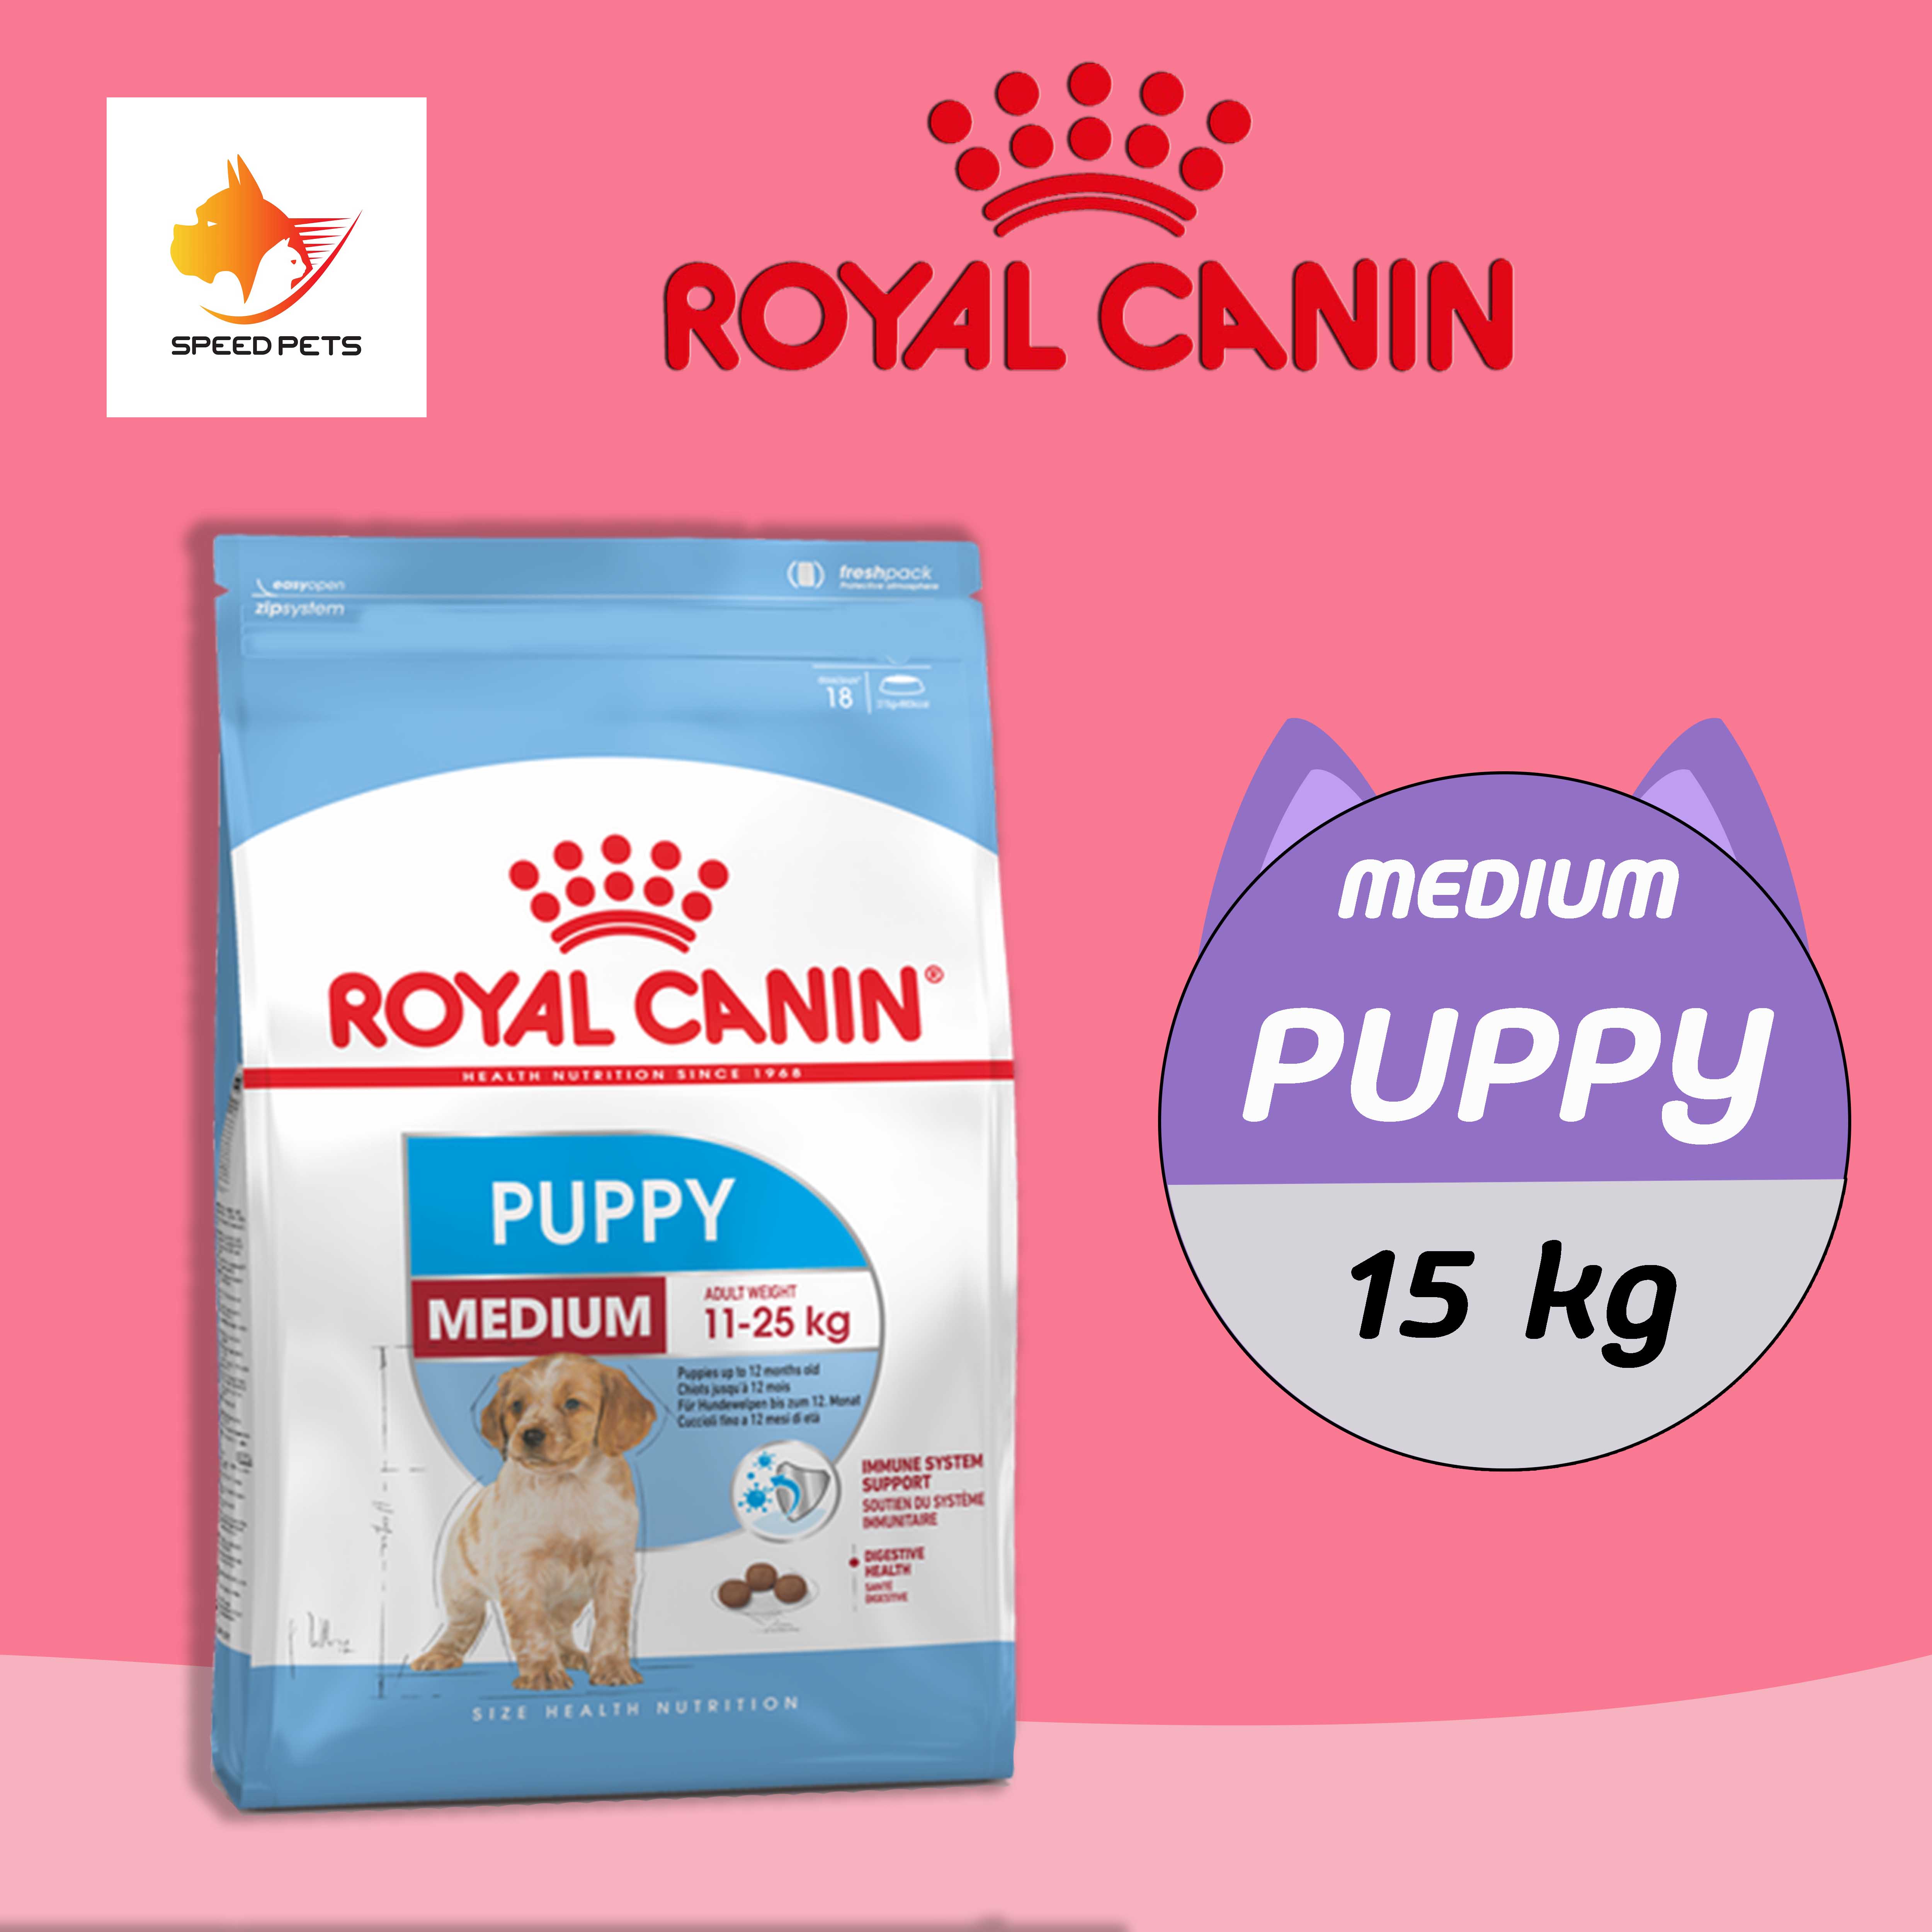 Royal Canin Medium Puppy  15kg โรยัล คานิน อาหาร ลูกสุนัข พันธุ์กลาง แบบเม็ด ขนาด 15 kg